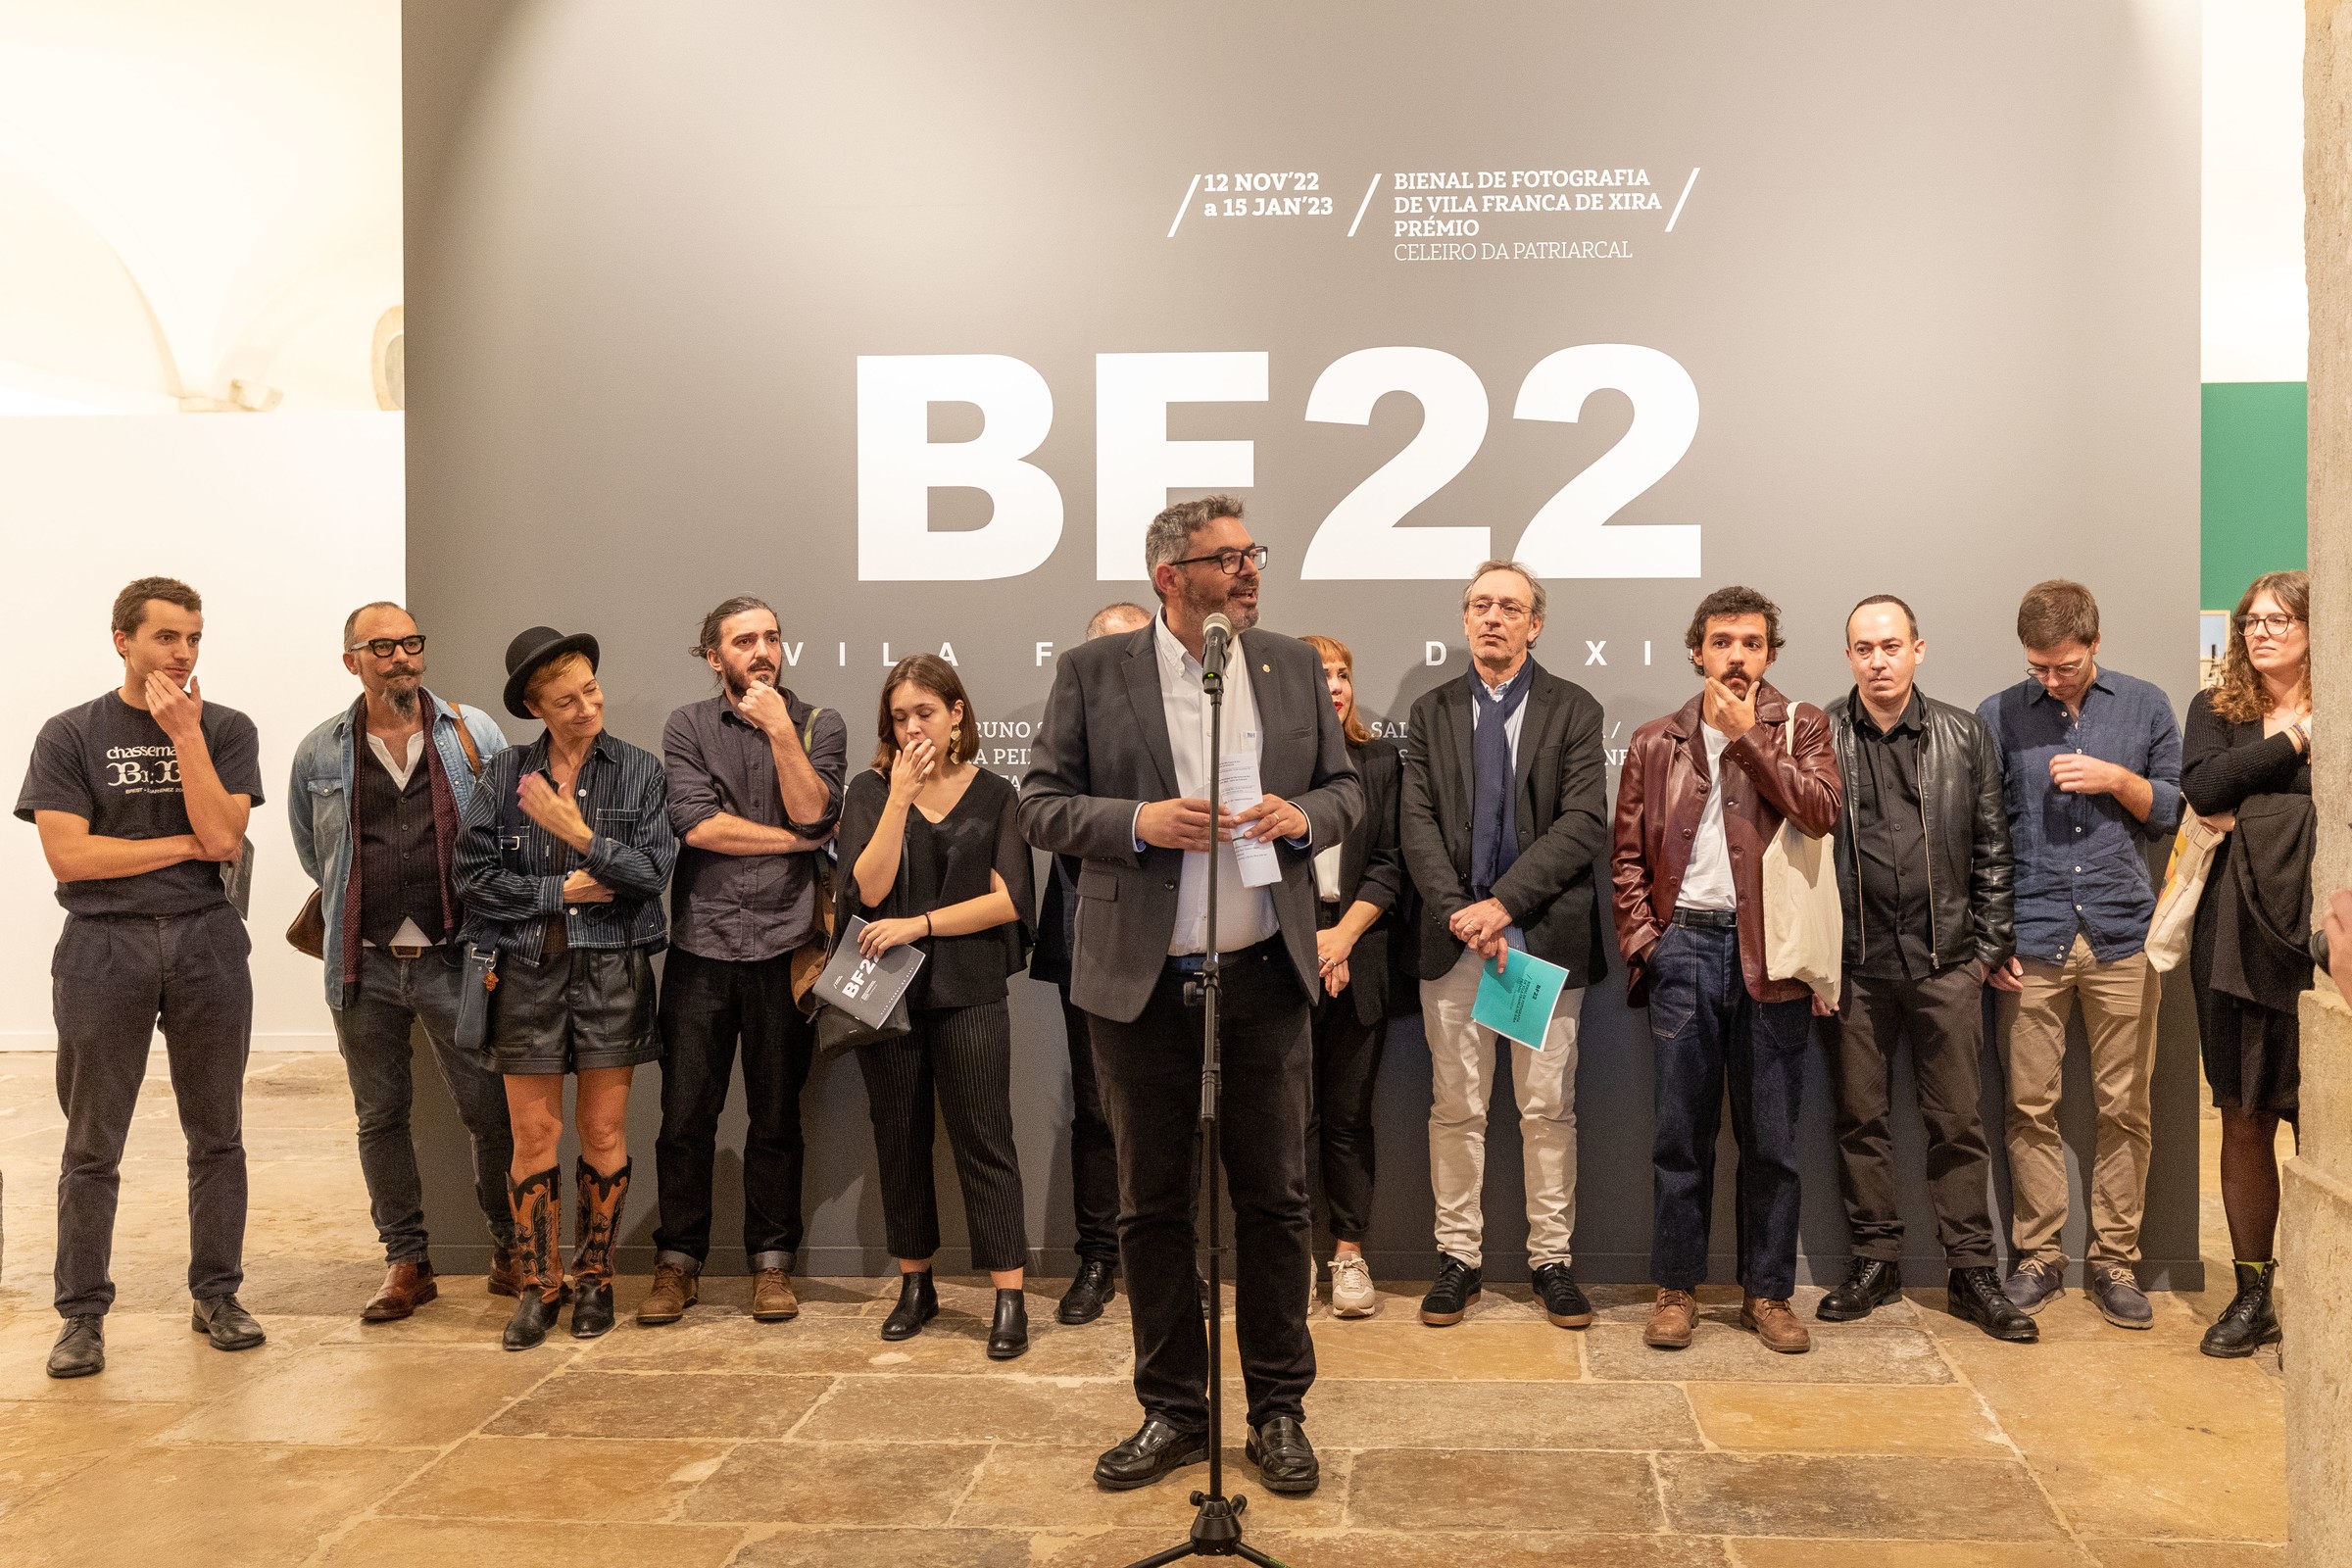 Já são conhecidos os vencedores da Bienal de Fotografia 2022